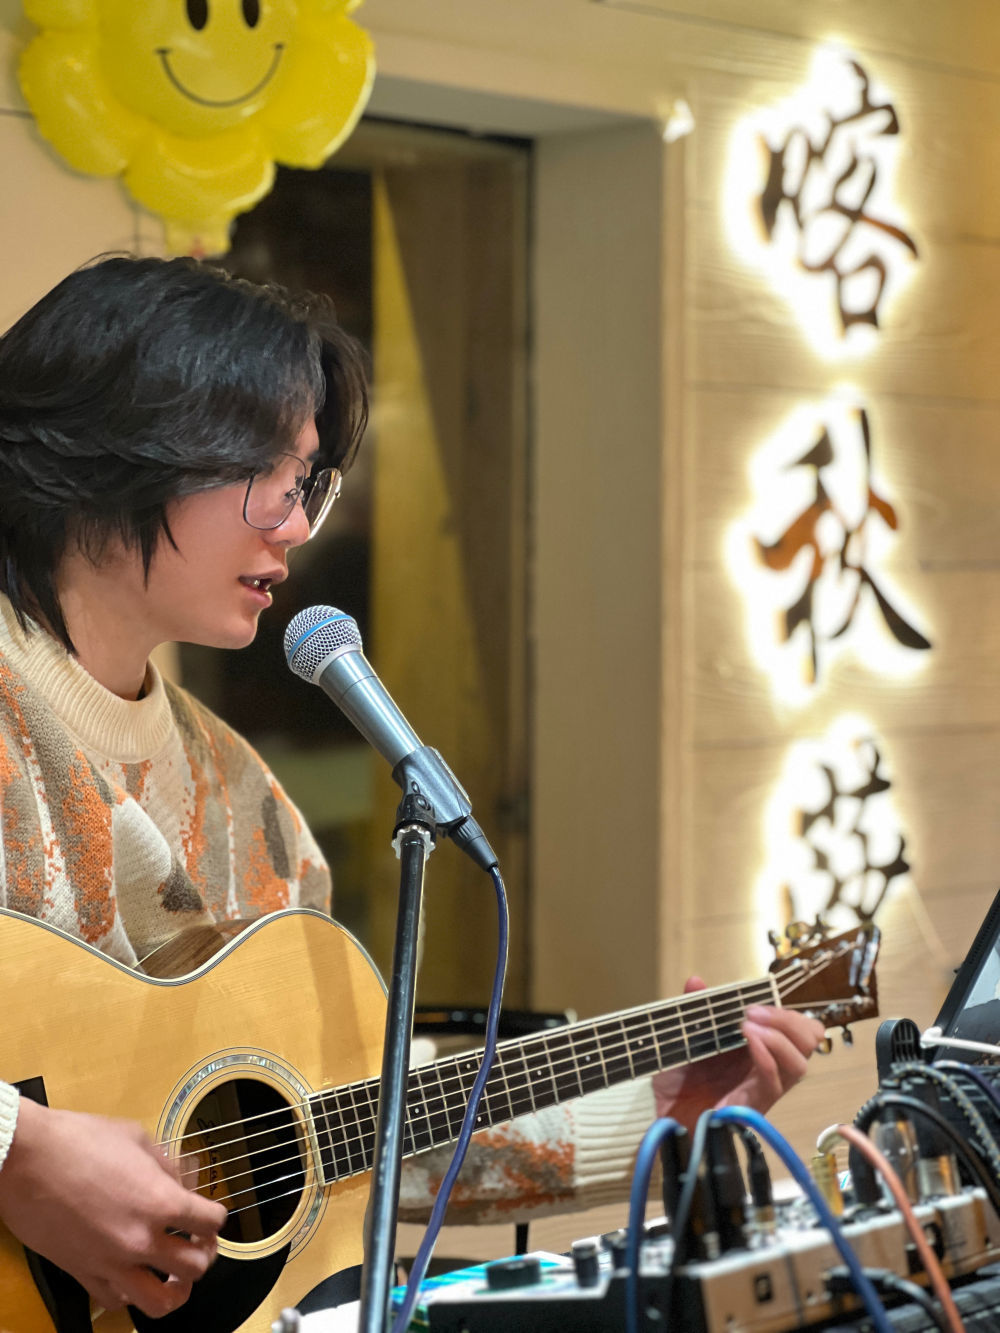 江西雪友秦浩东在禾木村一家餐厅做驻唱歌手。受访者供图